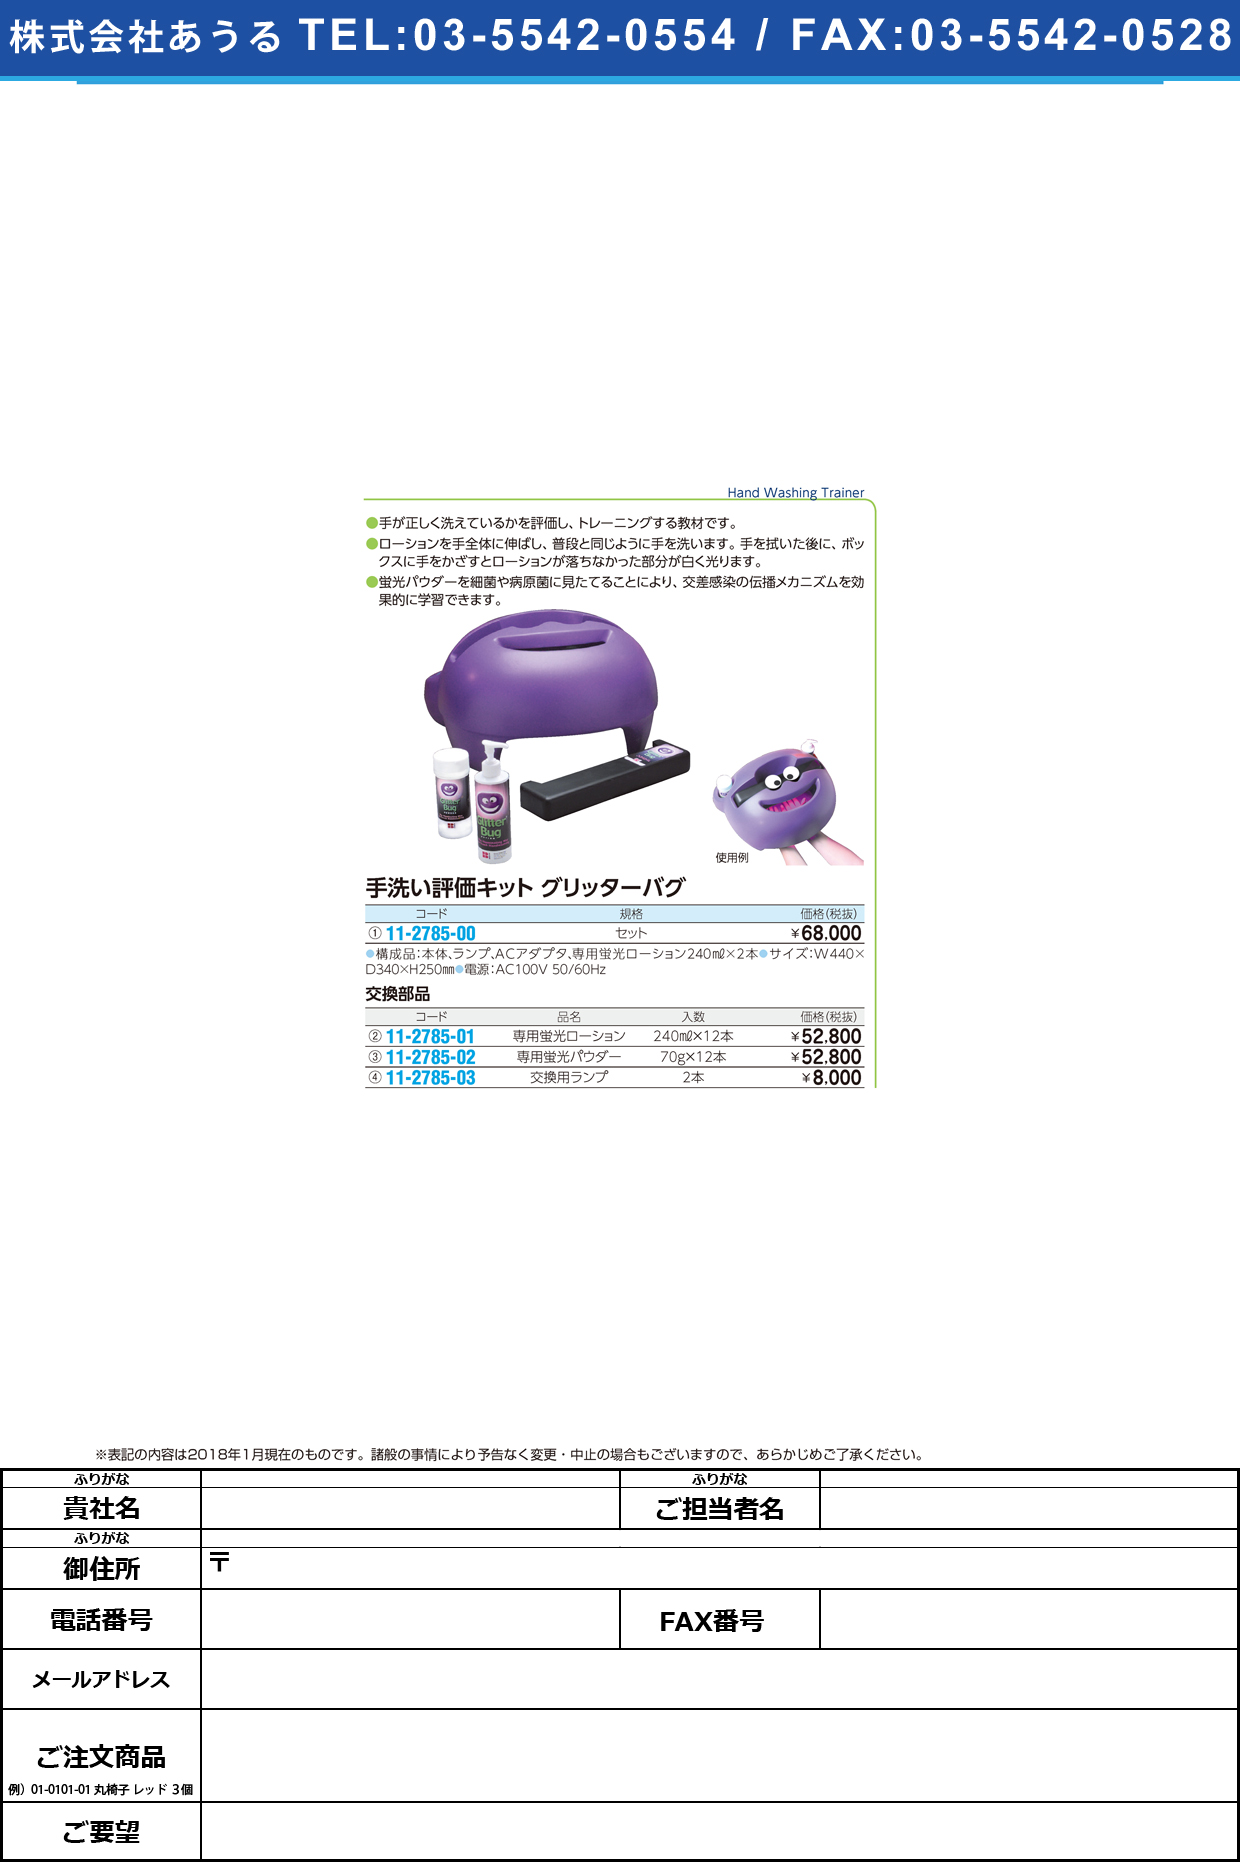 (11-2785-03)手洗いトレーニングボックス交換ランプ BRE-GBLAMP(2ﾎﾝｲﾘ) ｺｳｶﾝﾗﾝﾌﾟ【1箱単位】【2019年カタログ商品】